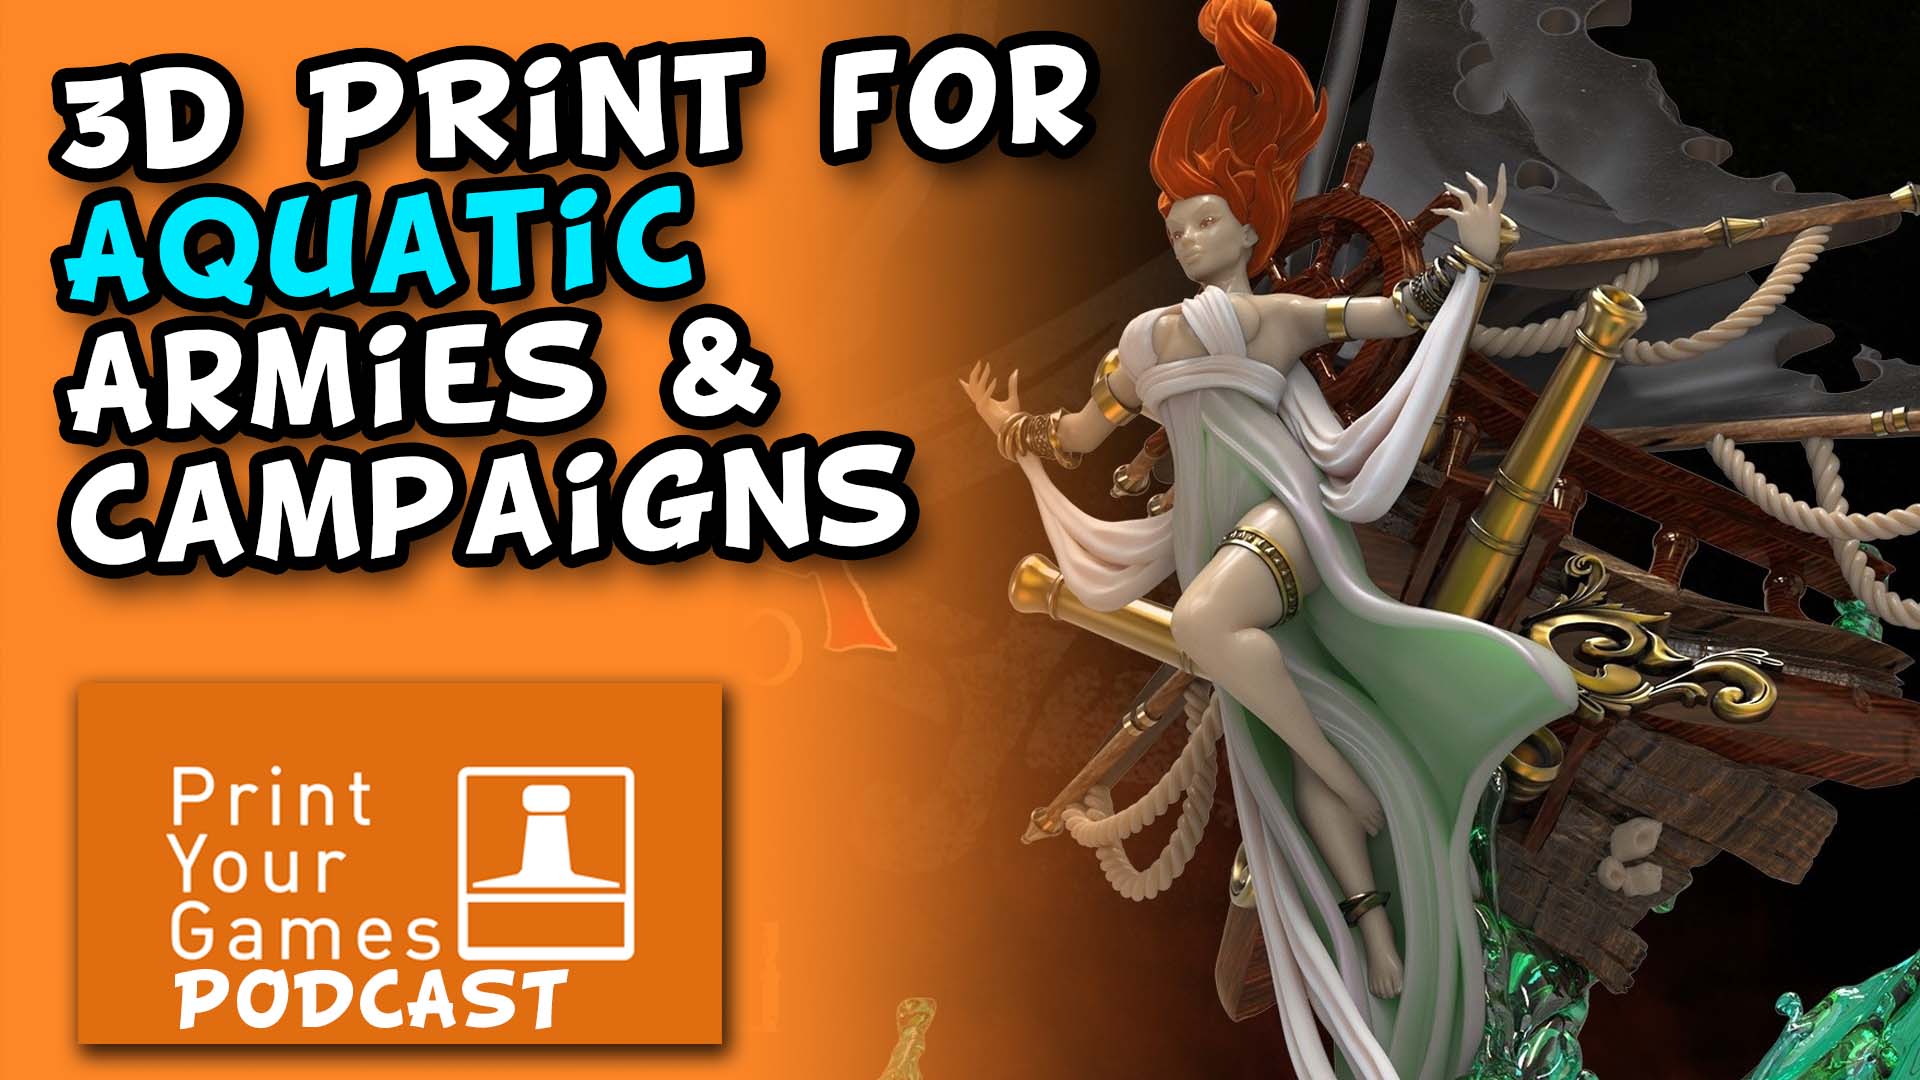 Episode 34 - 3d Print for Aquatic Armies & Campaigns